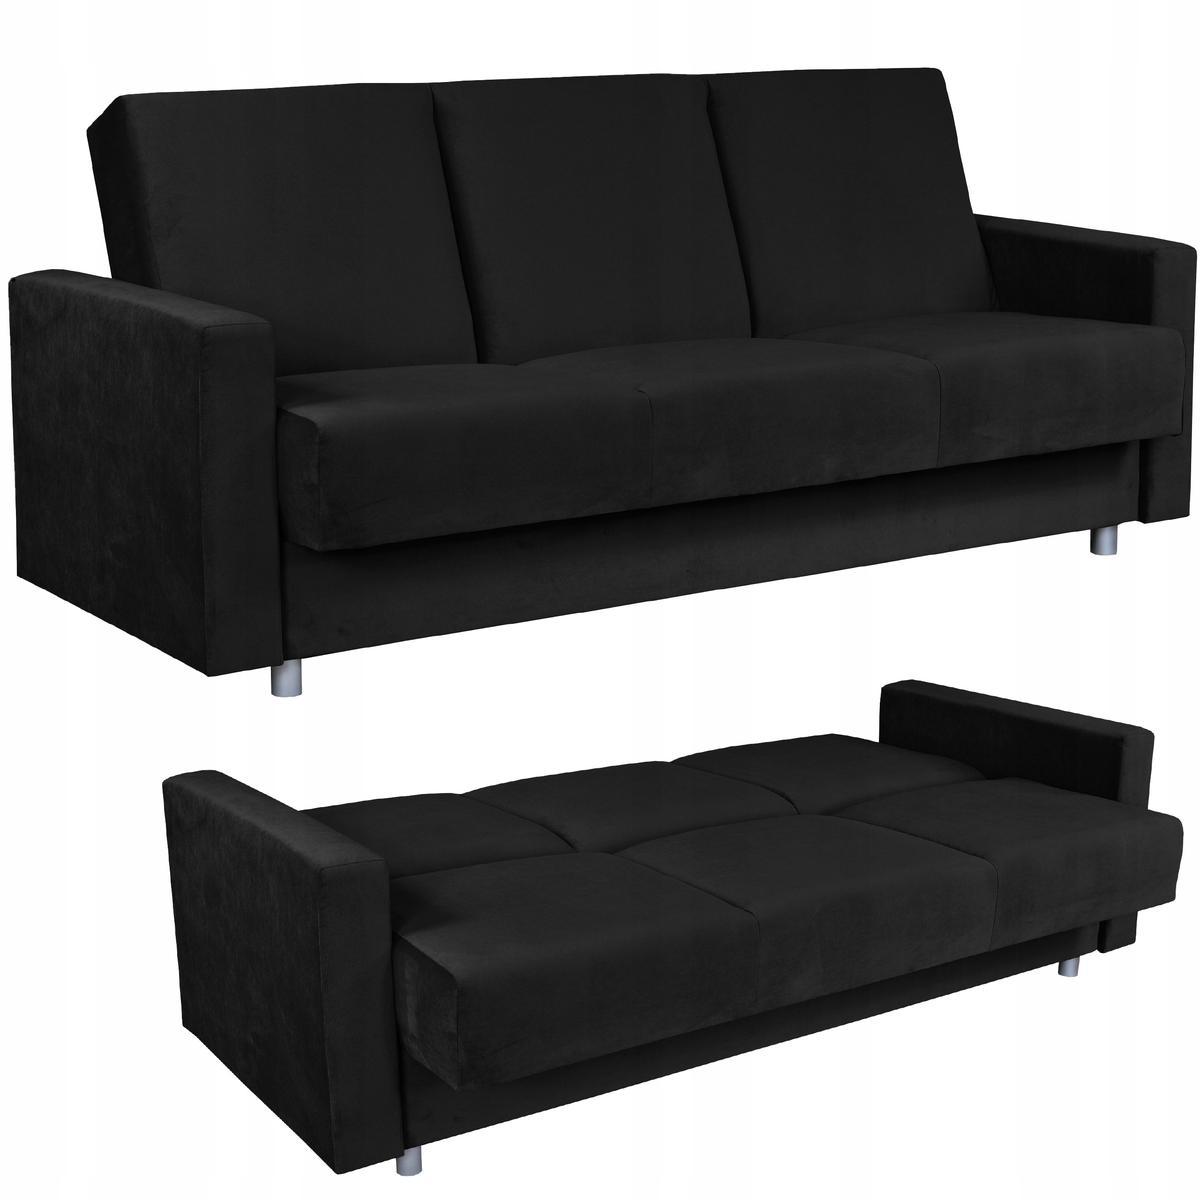 Wersalka sofa kanapa rozkładana czarna Alicja FamilyMeble 0 Full Screen